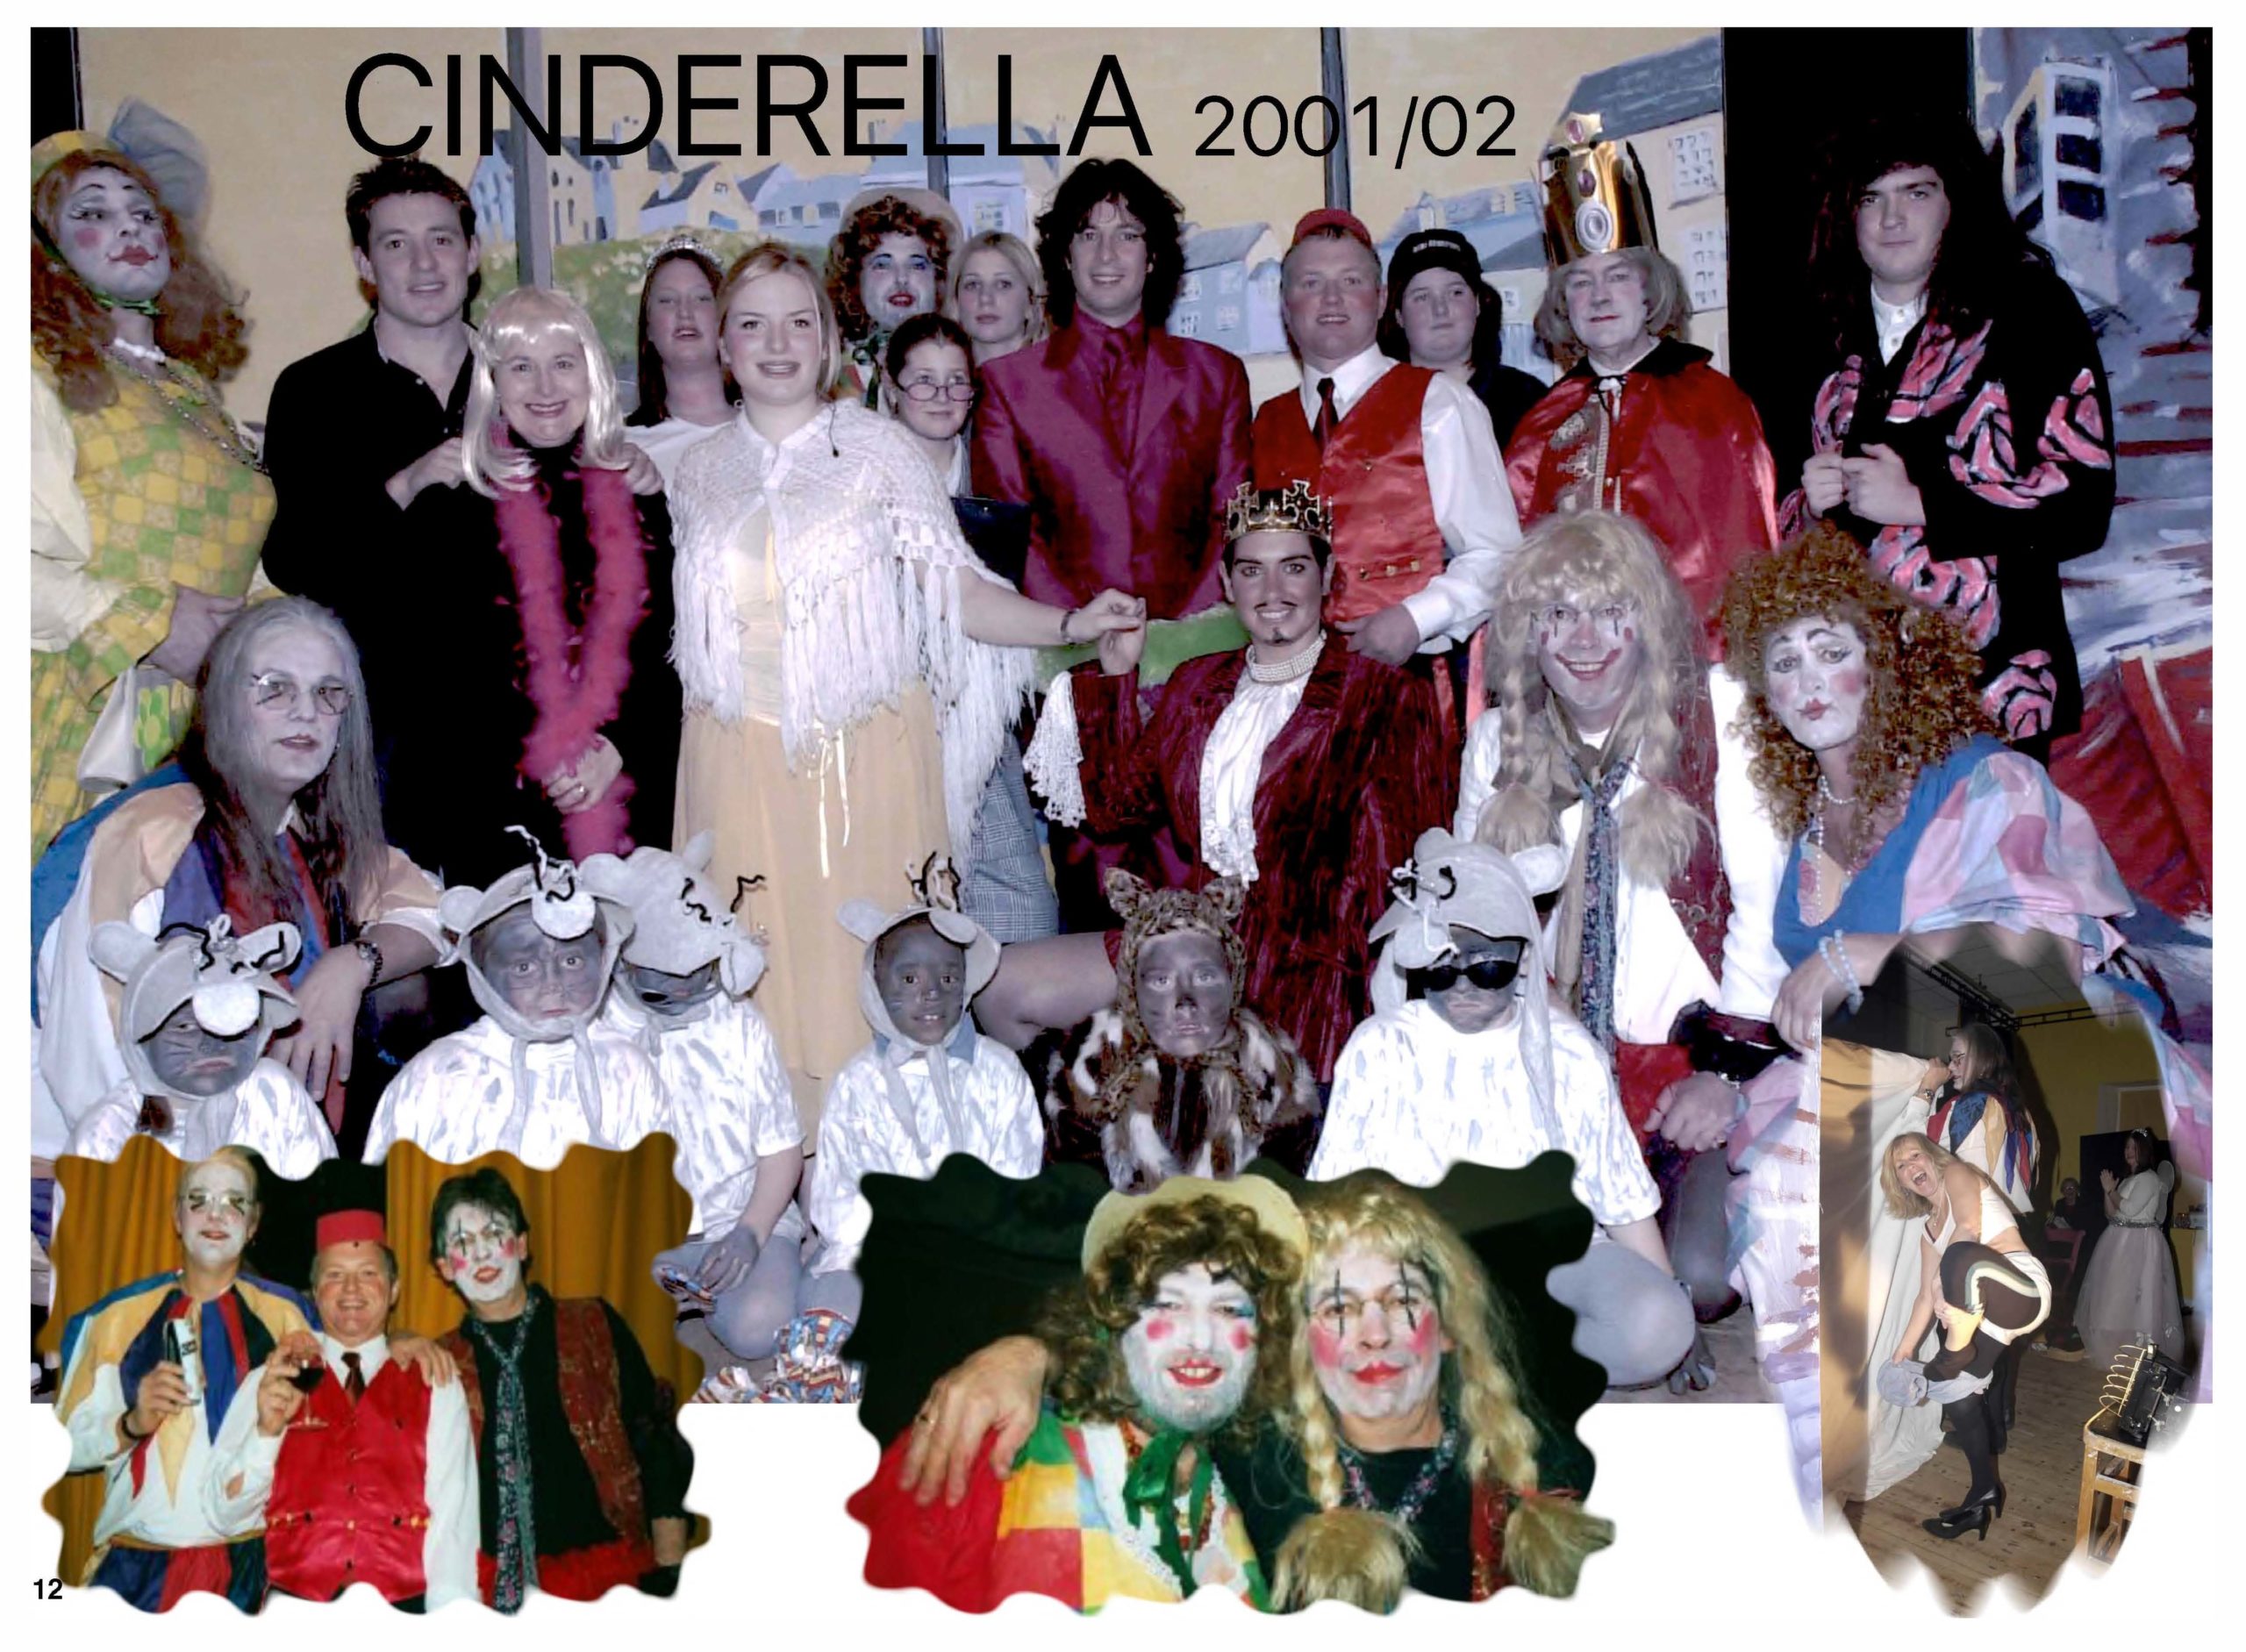 Cinderella 2001/02